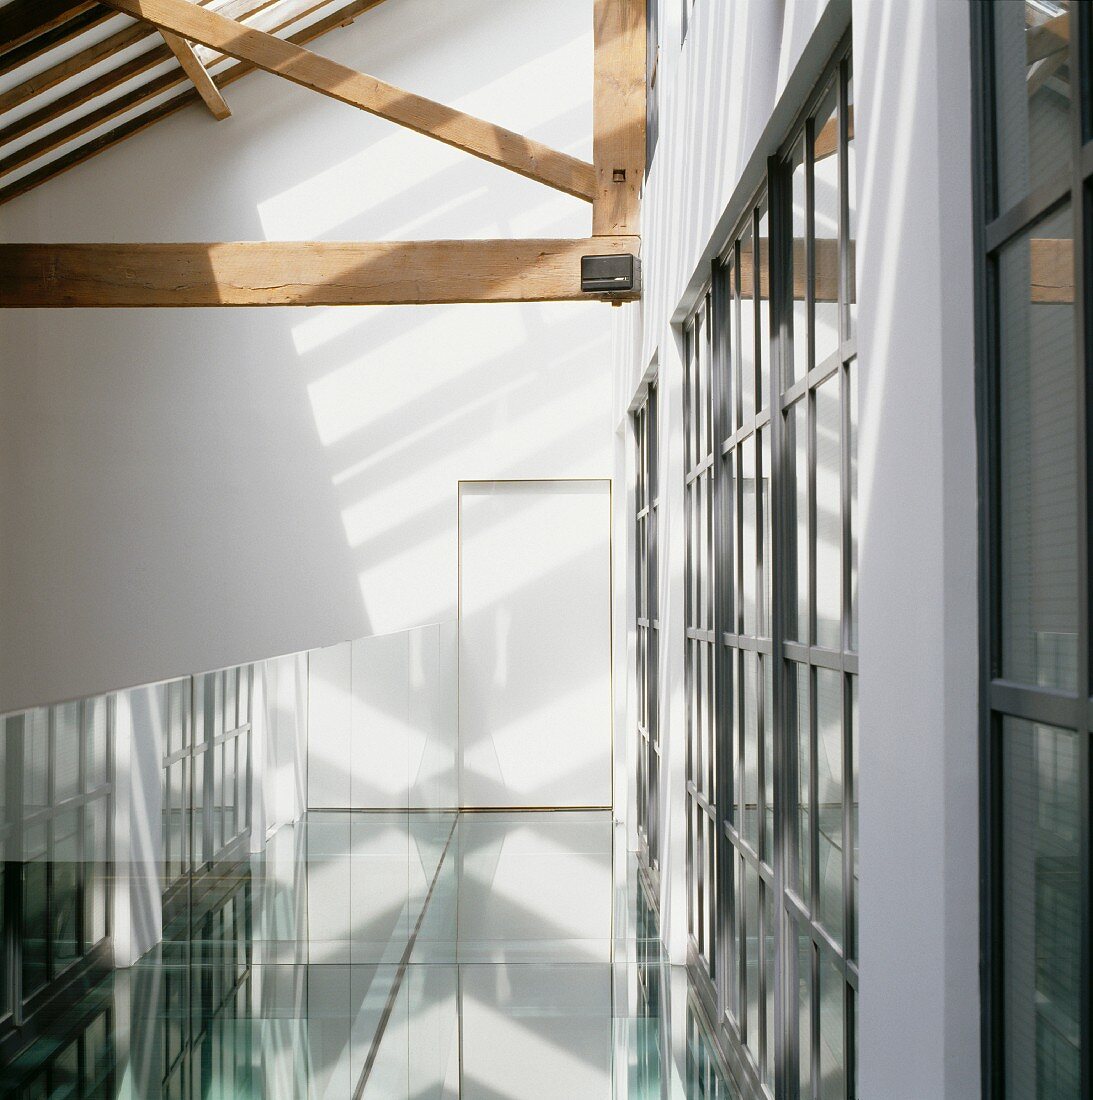 Kühle Lichtreflexionen auf Galerie unter offener Dachkonstruktion aus Holz